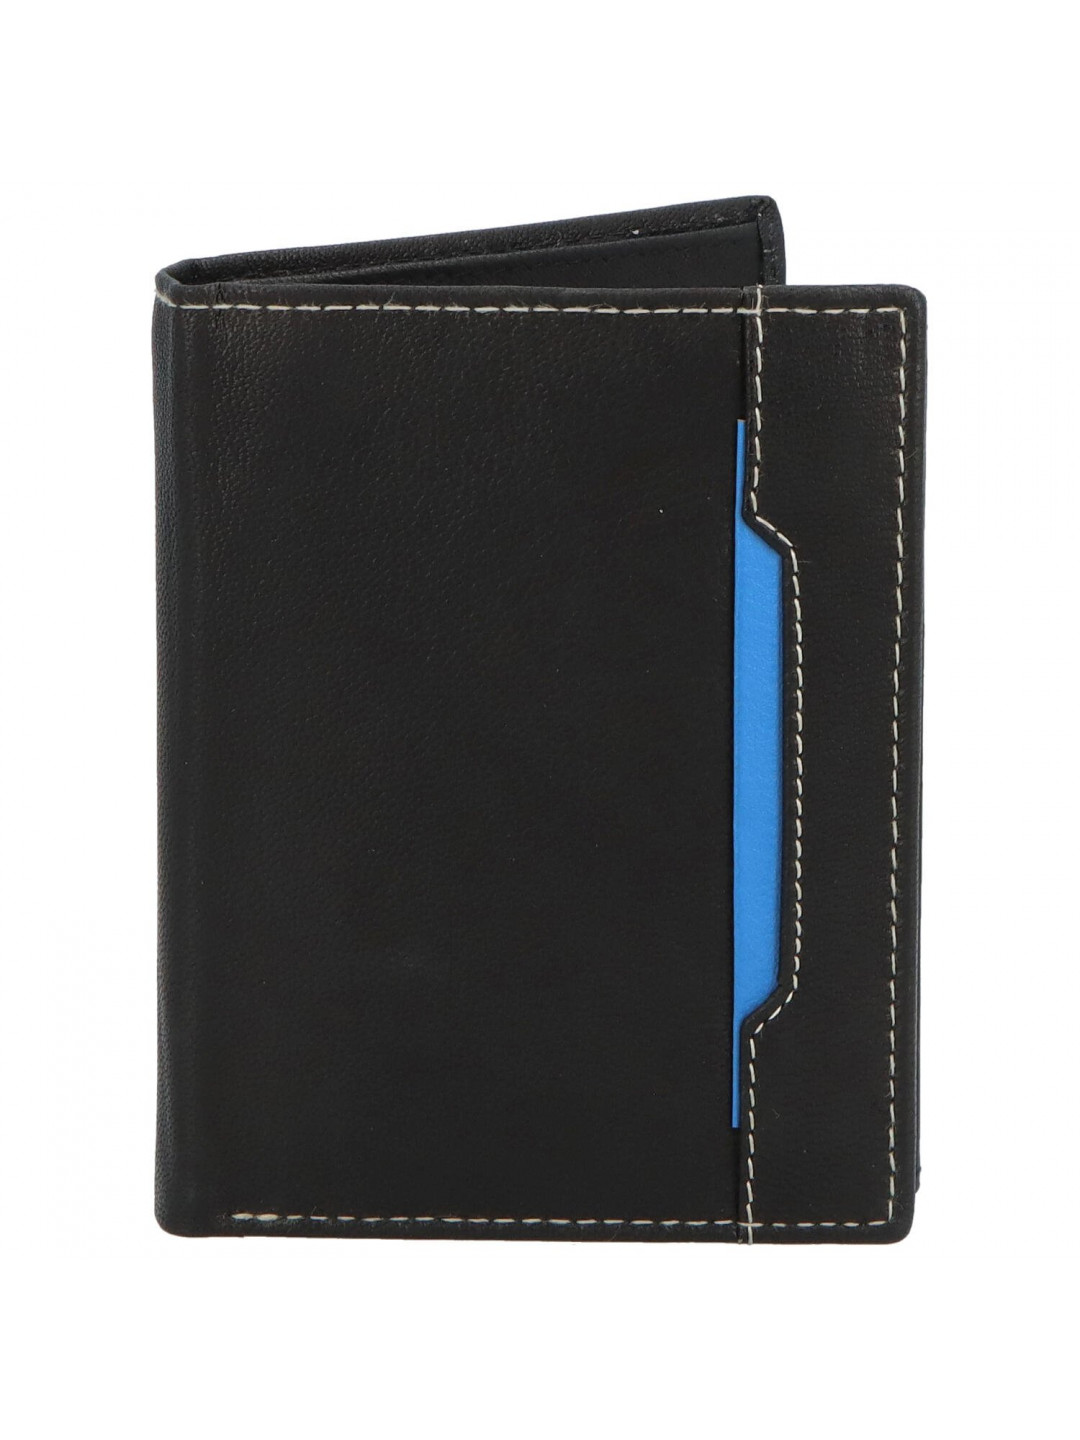 Trendová pánská kožená peněženka Mluko černá – modrá